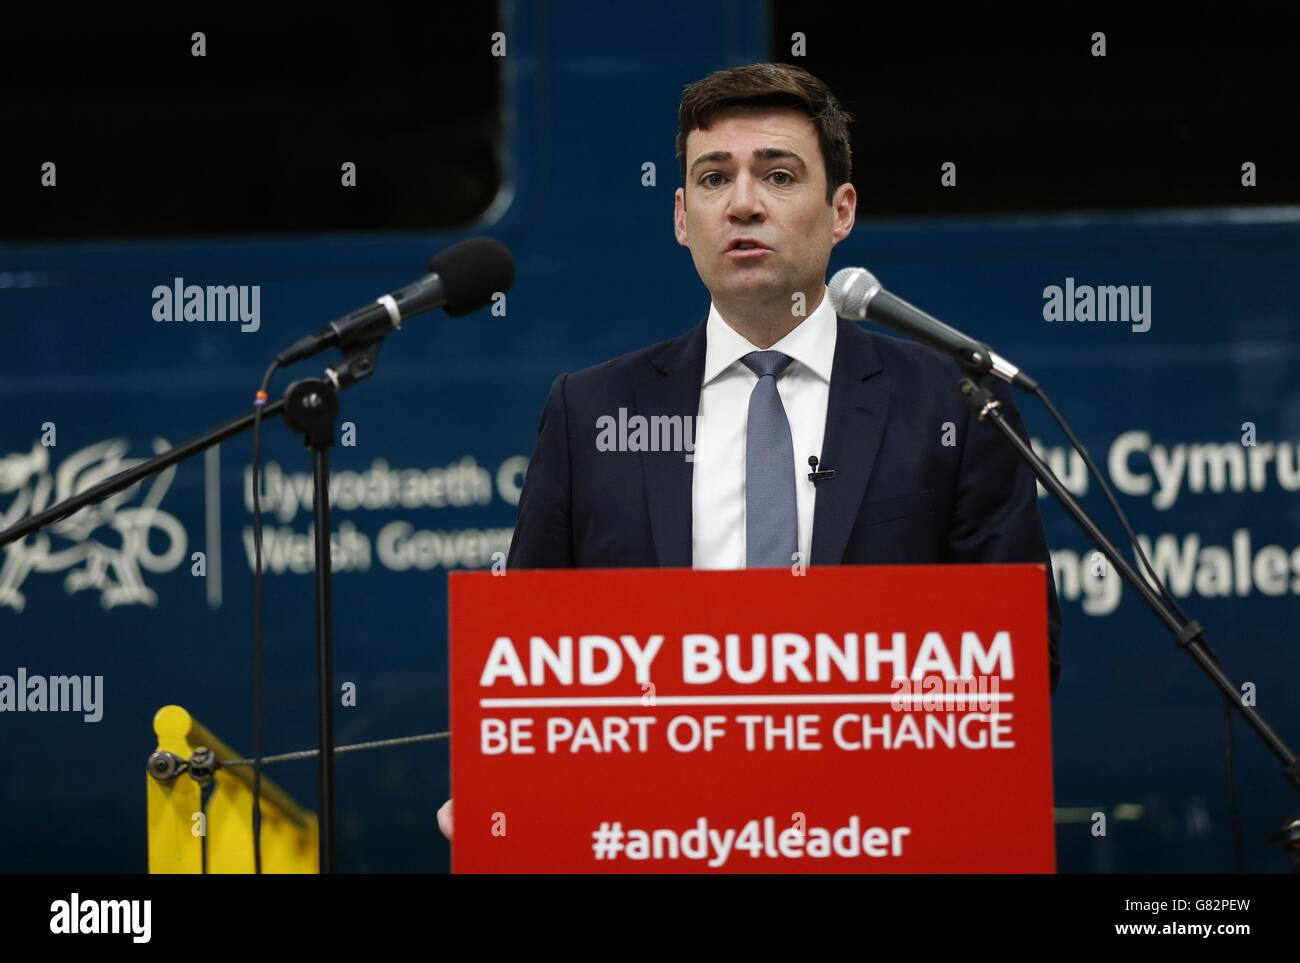 Andy Burnham, Kandidat der Labour-Führung, während einer Rede bei der Arriva-Zugwartung in Crewe, da die endgültige Besetzung der Kandidaten bei den Labour-Führungswahlen klar werden wird, wenn die Nominierungen für den Wettbewerb als Nachfolger von Ed Miliband an der Spitze der Opposition enden. Stockfoto